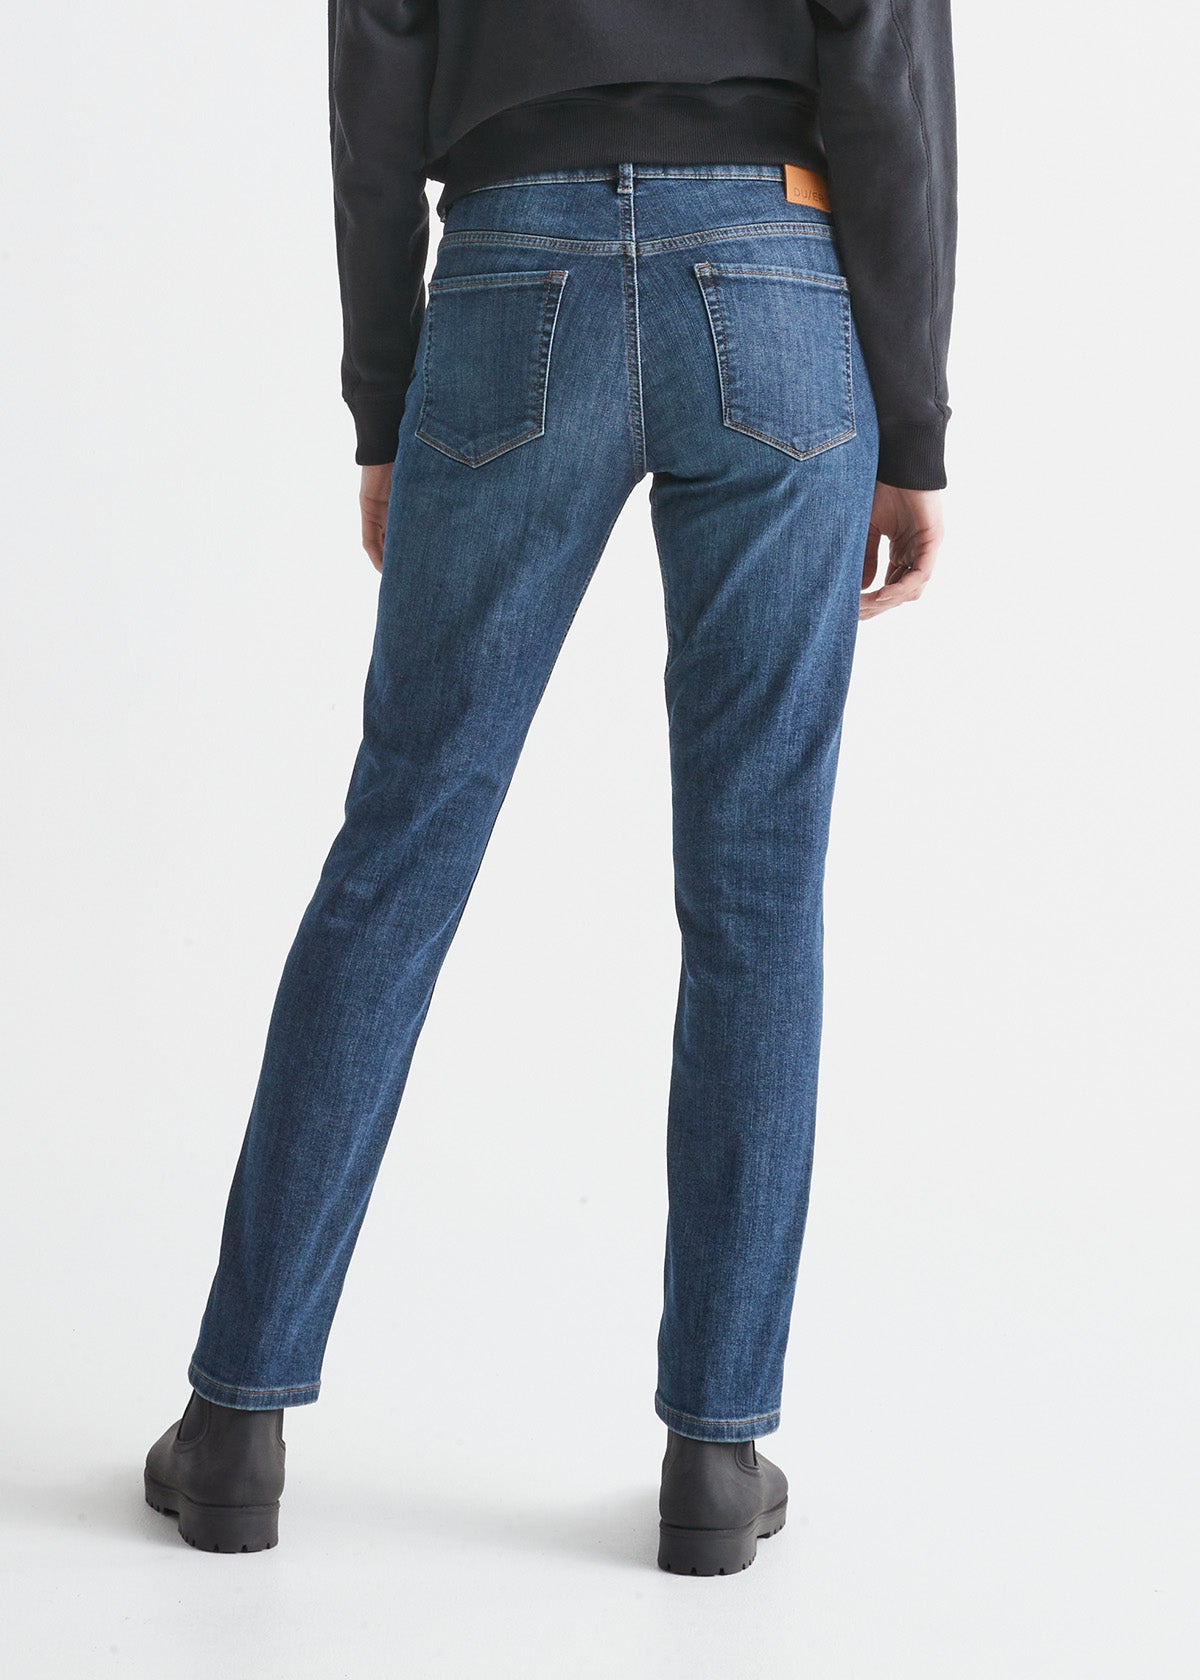 NEW DUER Jeans (31W/31L) Fleece Lined Dark Stone Fireside Skinny